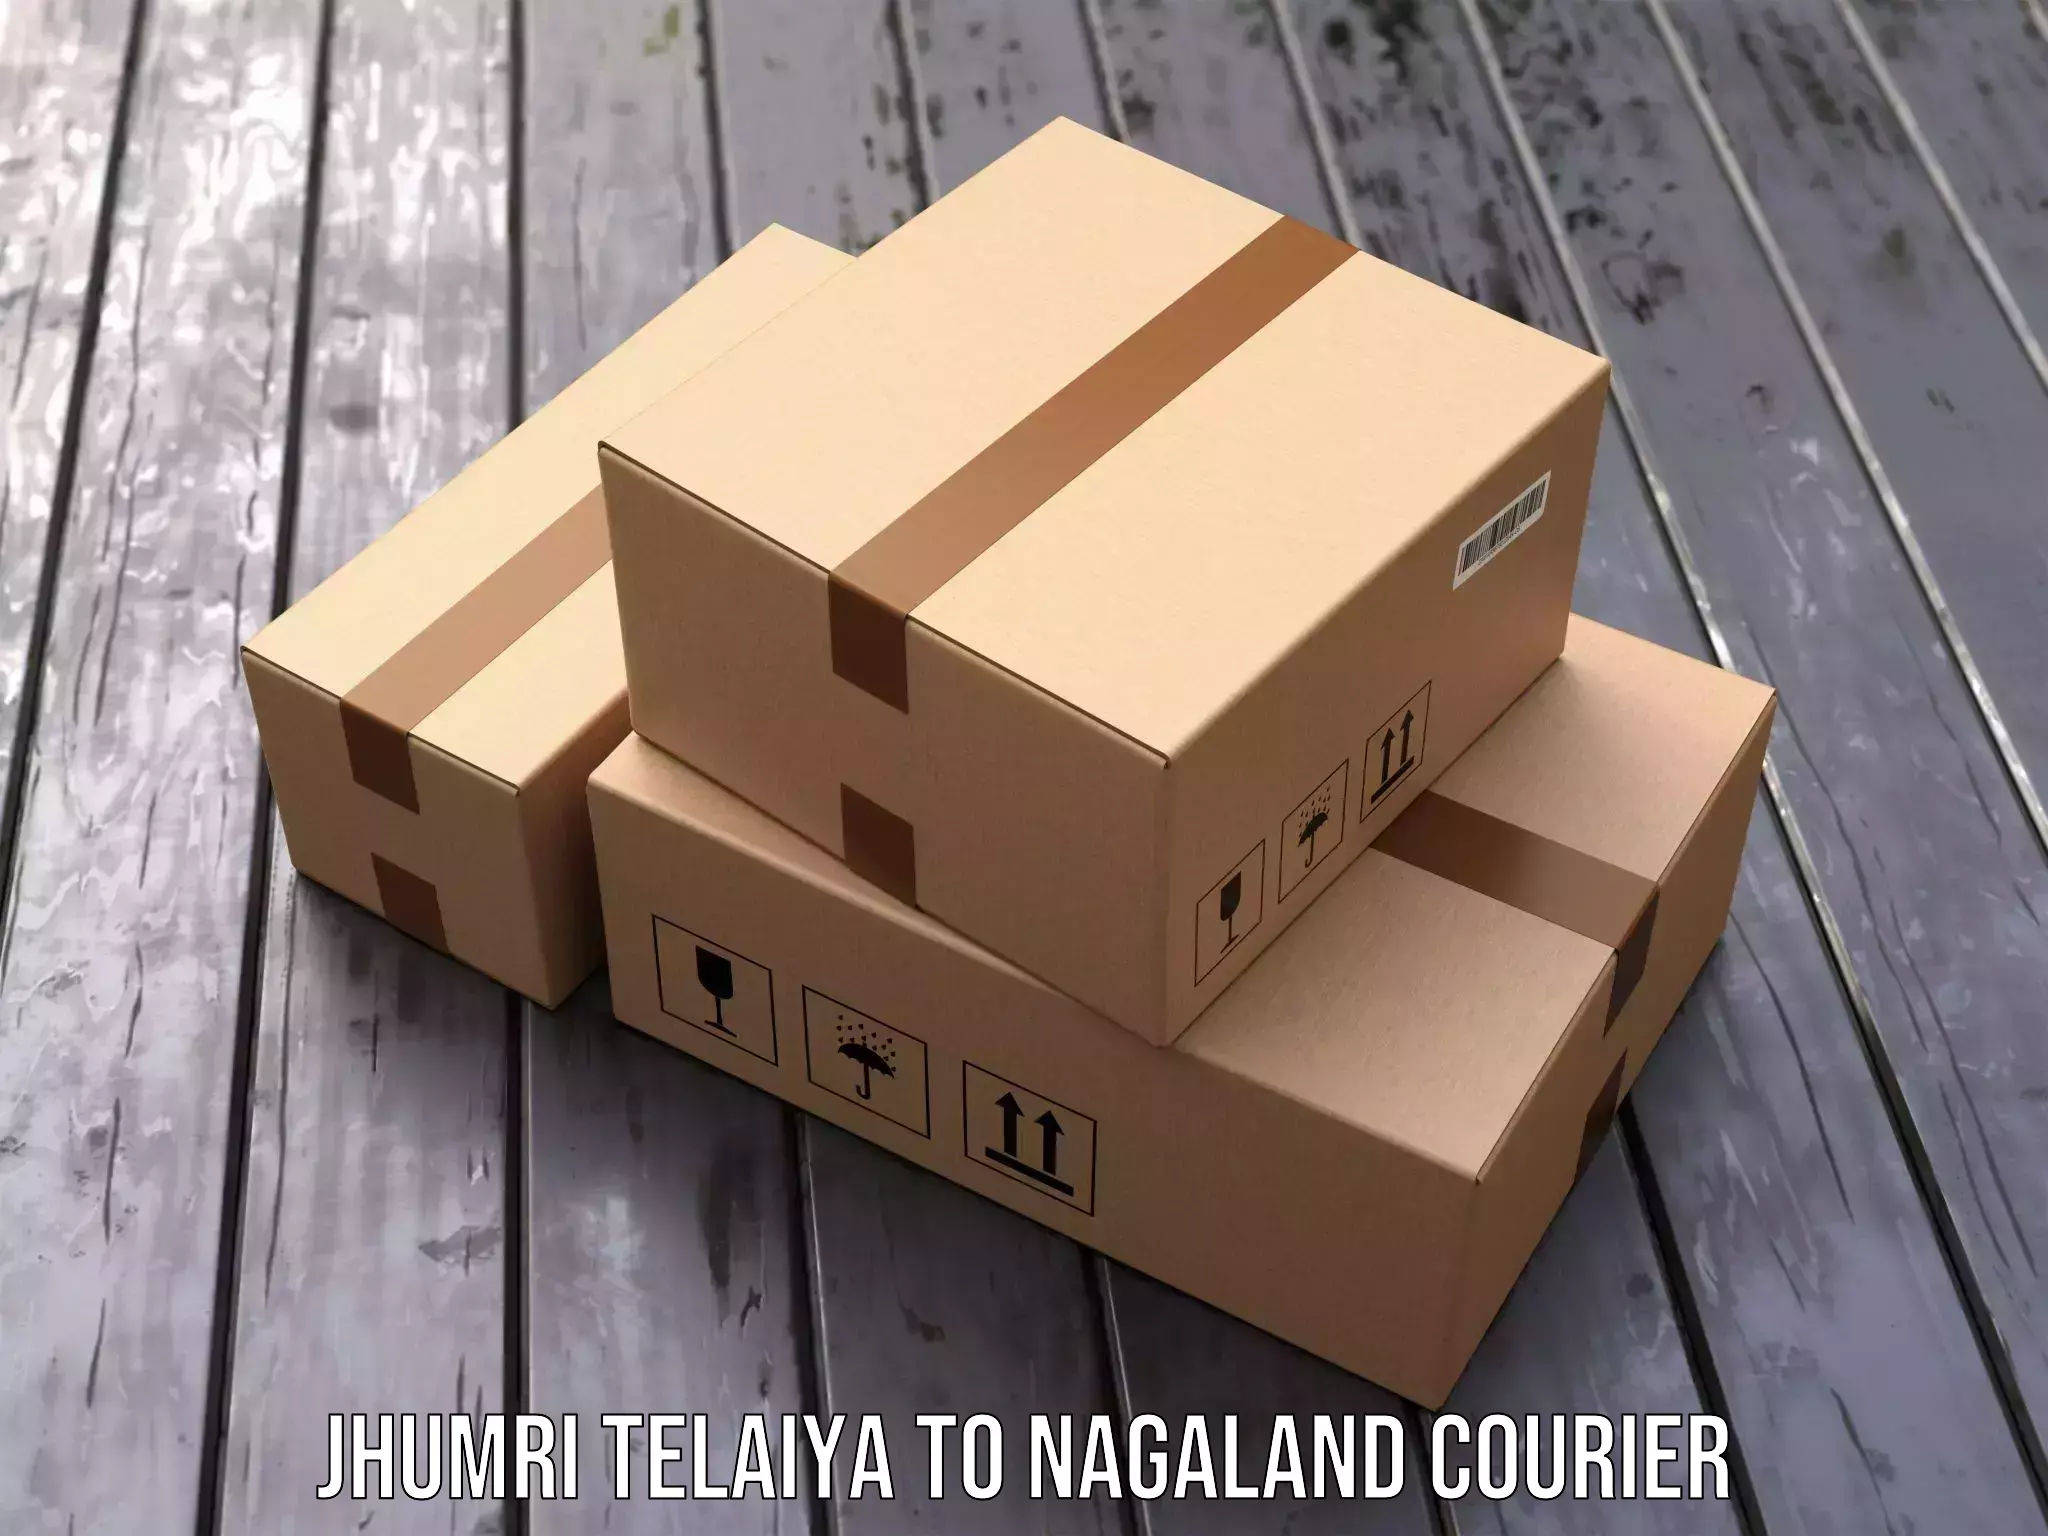 International courier networks Jhumri Telaiya to NIT Nagaland